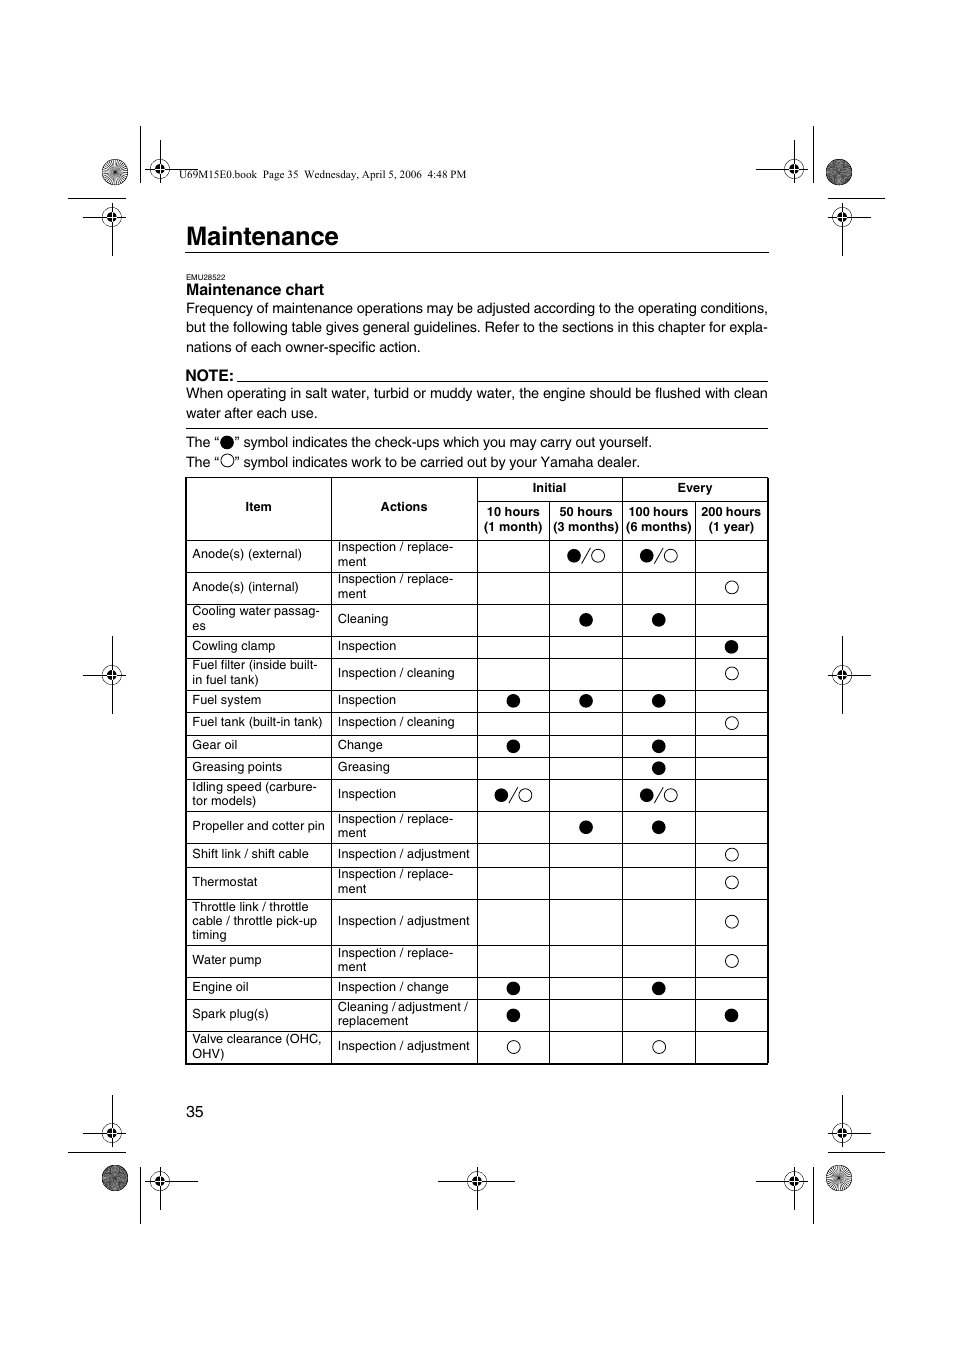 Maintenance chart, Maintenance | Yamaha F25 User Manual | Page 40 / 66